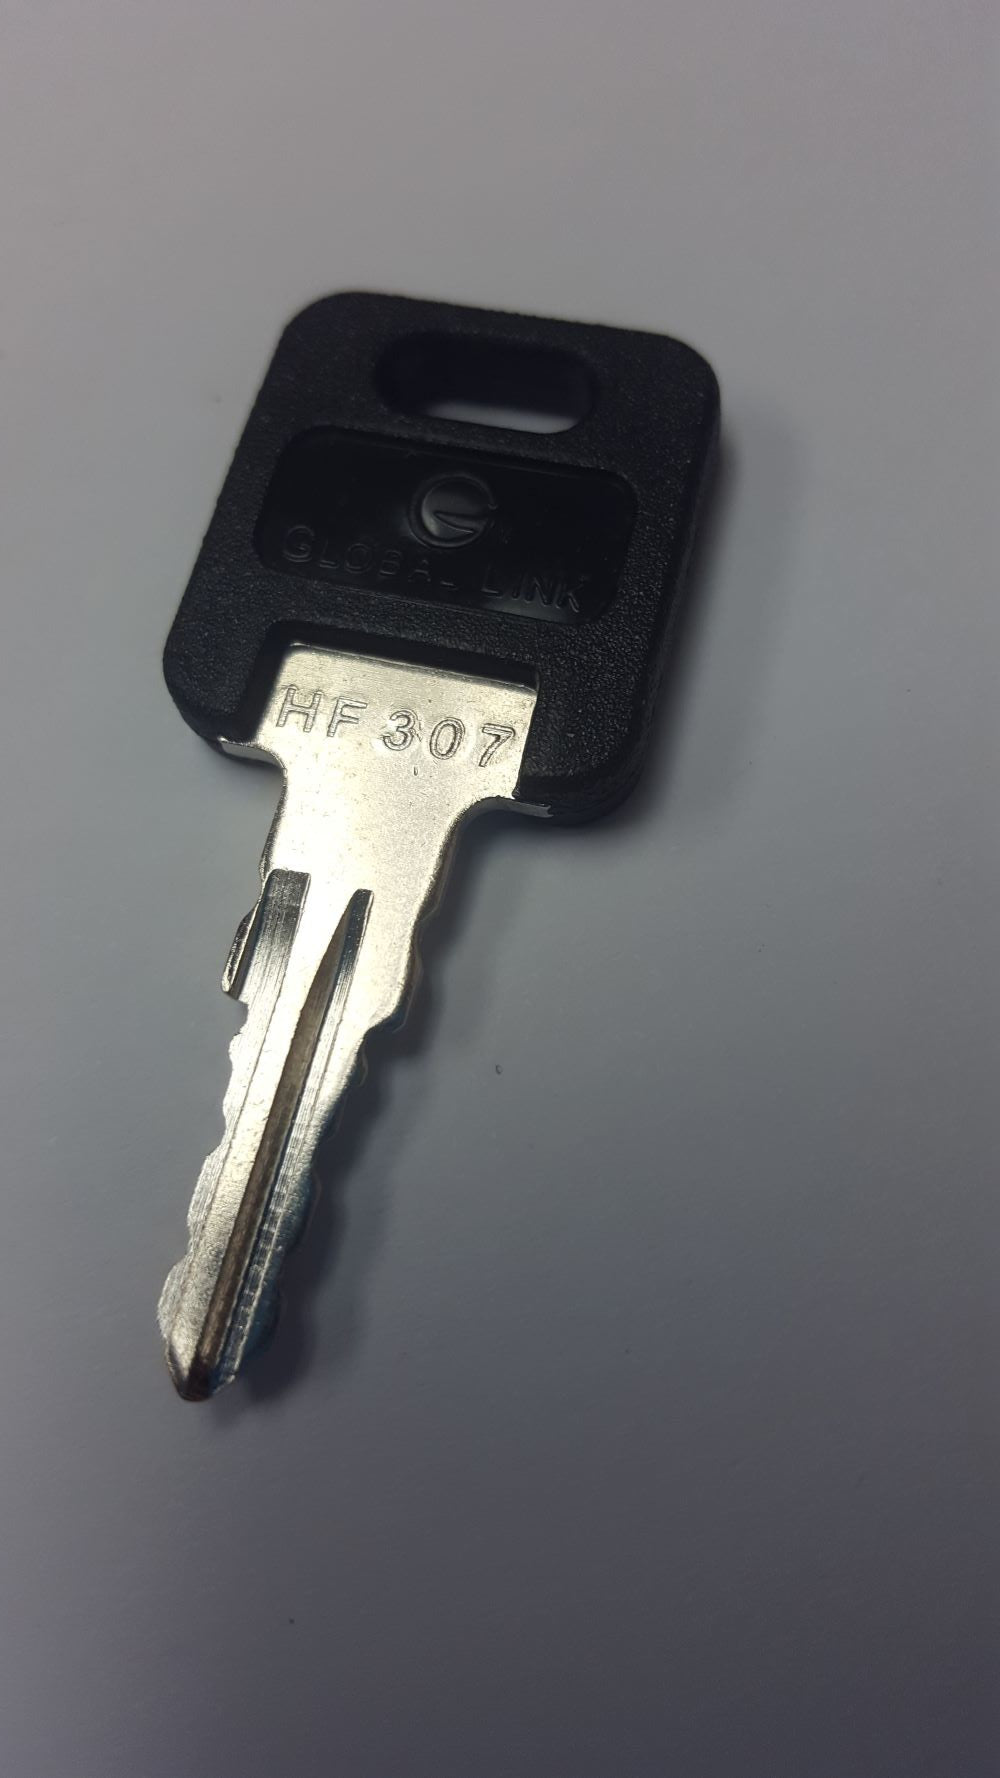 CPG KEY-HF-307 Pre-cut Stamped FIC Replacemnt HF307 Key